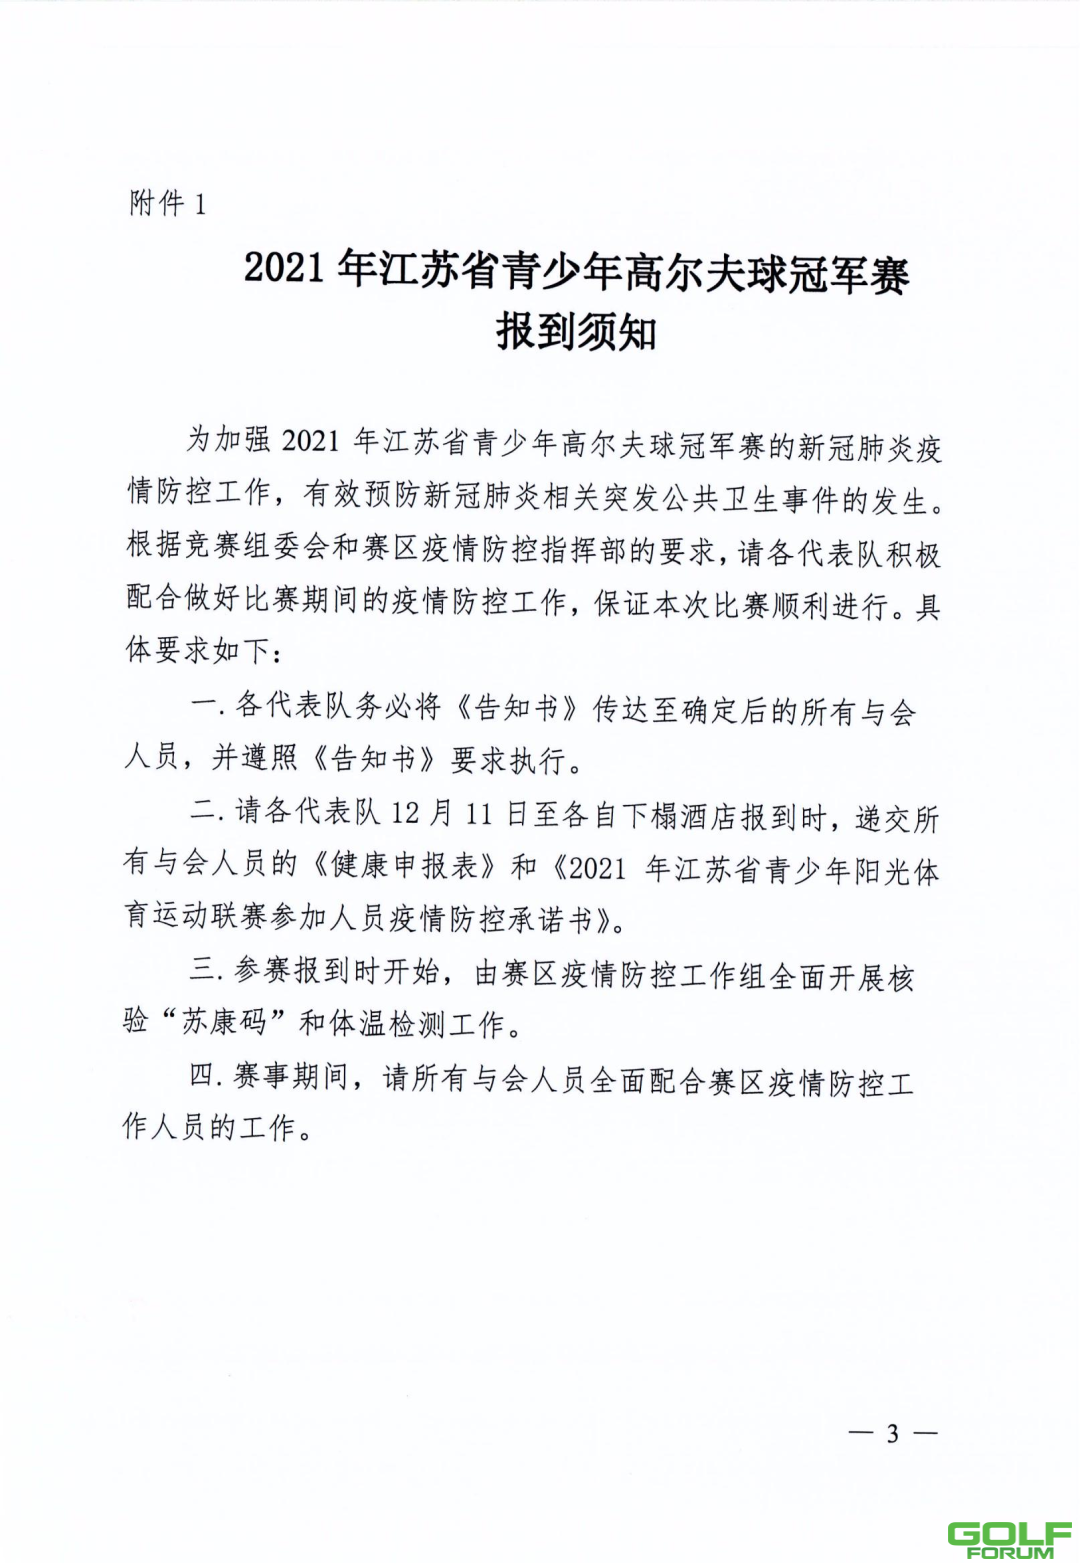 关于2021年江苏省青少年高尔夫球冠军赛补充通知